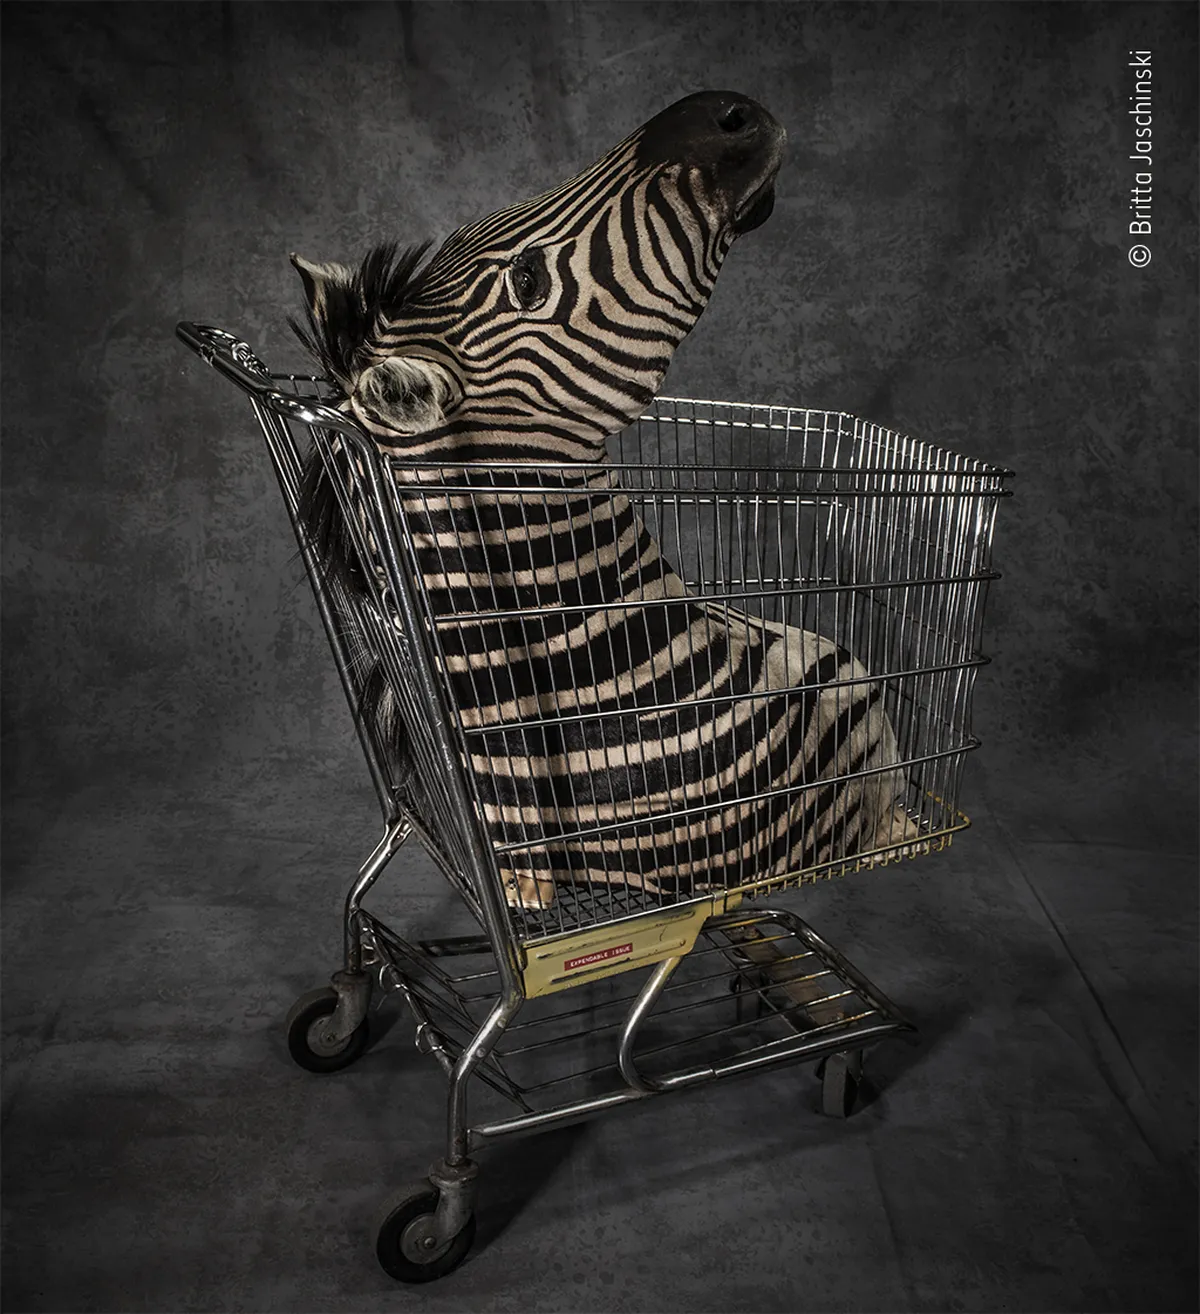 Fotogrāfe Brita Jašinska iemūžina lidostās un robežkontroles punktos konfiscētos savvaļas dzīvniekus, to ādas un izbāzeņus, cenšoties saprast, kāpēc pasaulē joprojām ir pieprasījums pēc šāda rūpala, lai gan tas rada ciešanas vai pat noved veselas sugas līdz izmiršanas robežai. Zebras galva tika konfiscēta ASV robežpunktā.